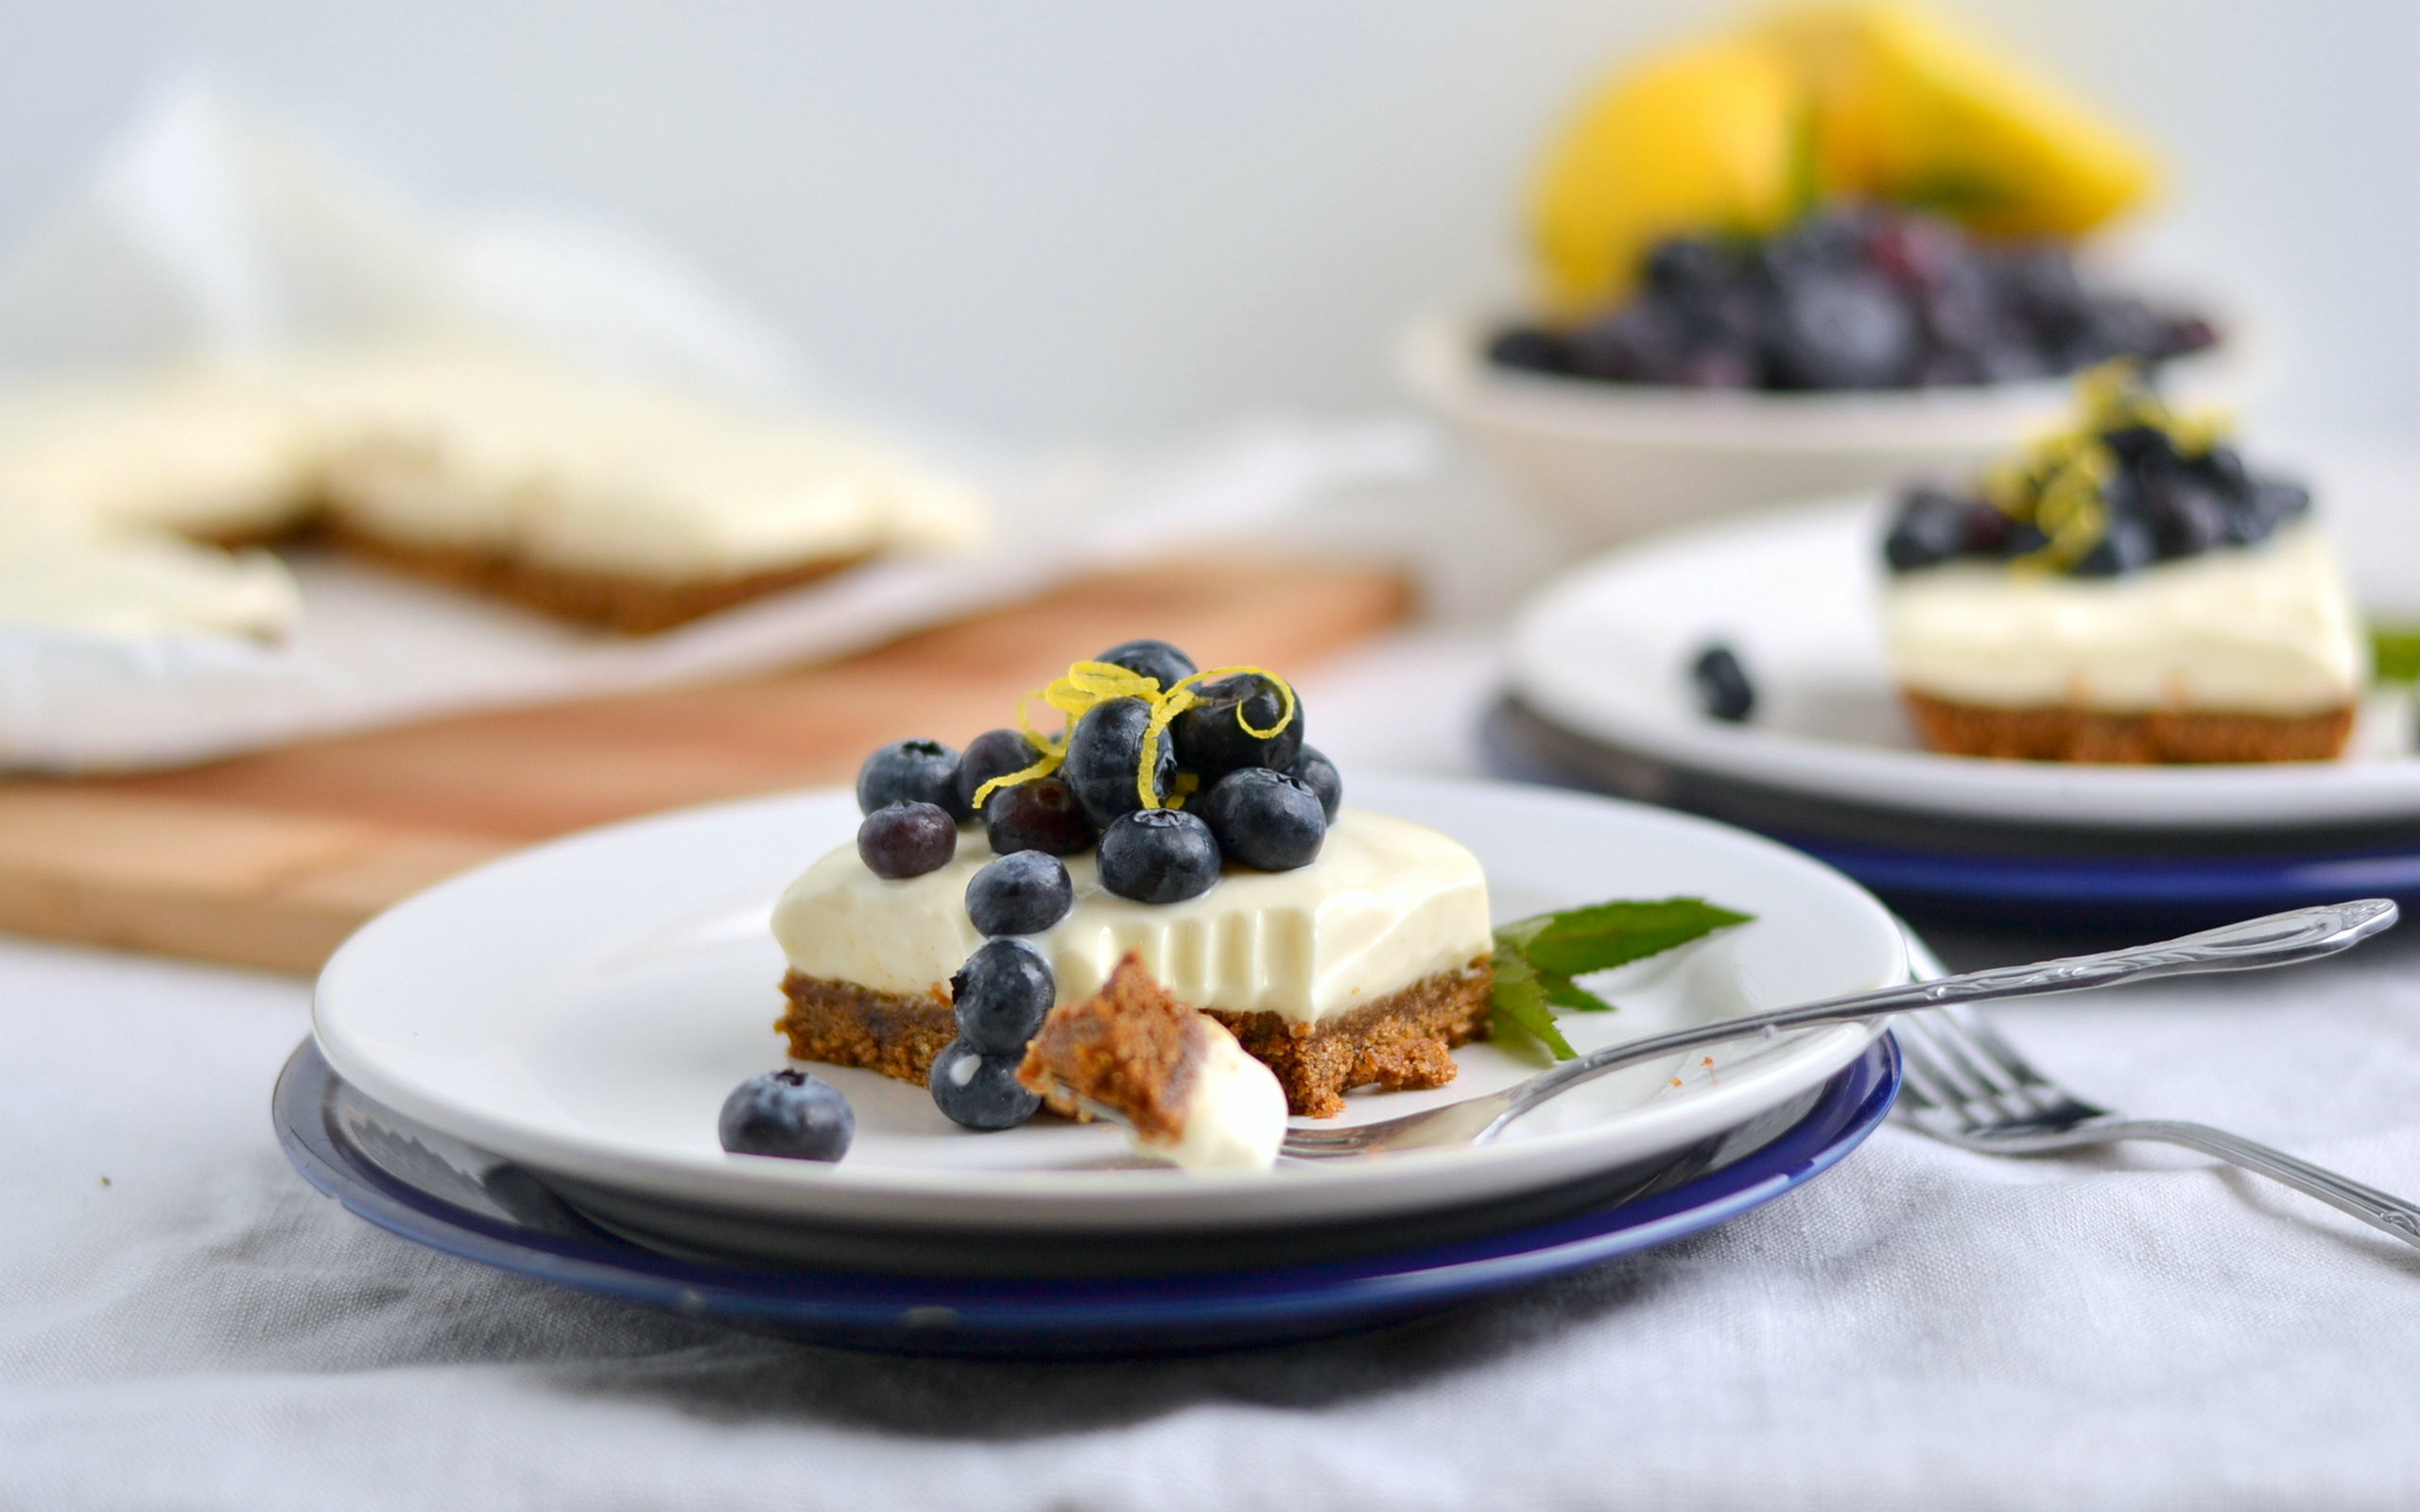 Cheesecake: A featured dessert item at restaurants around the world. 2560x1600 HD Background.